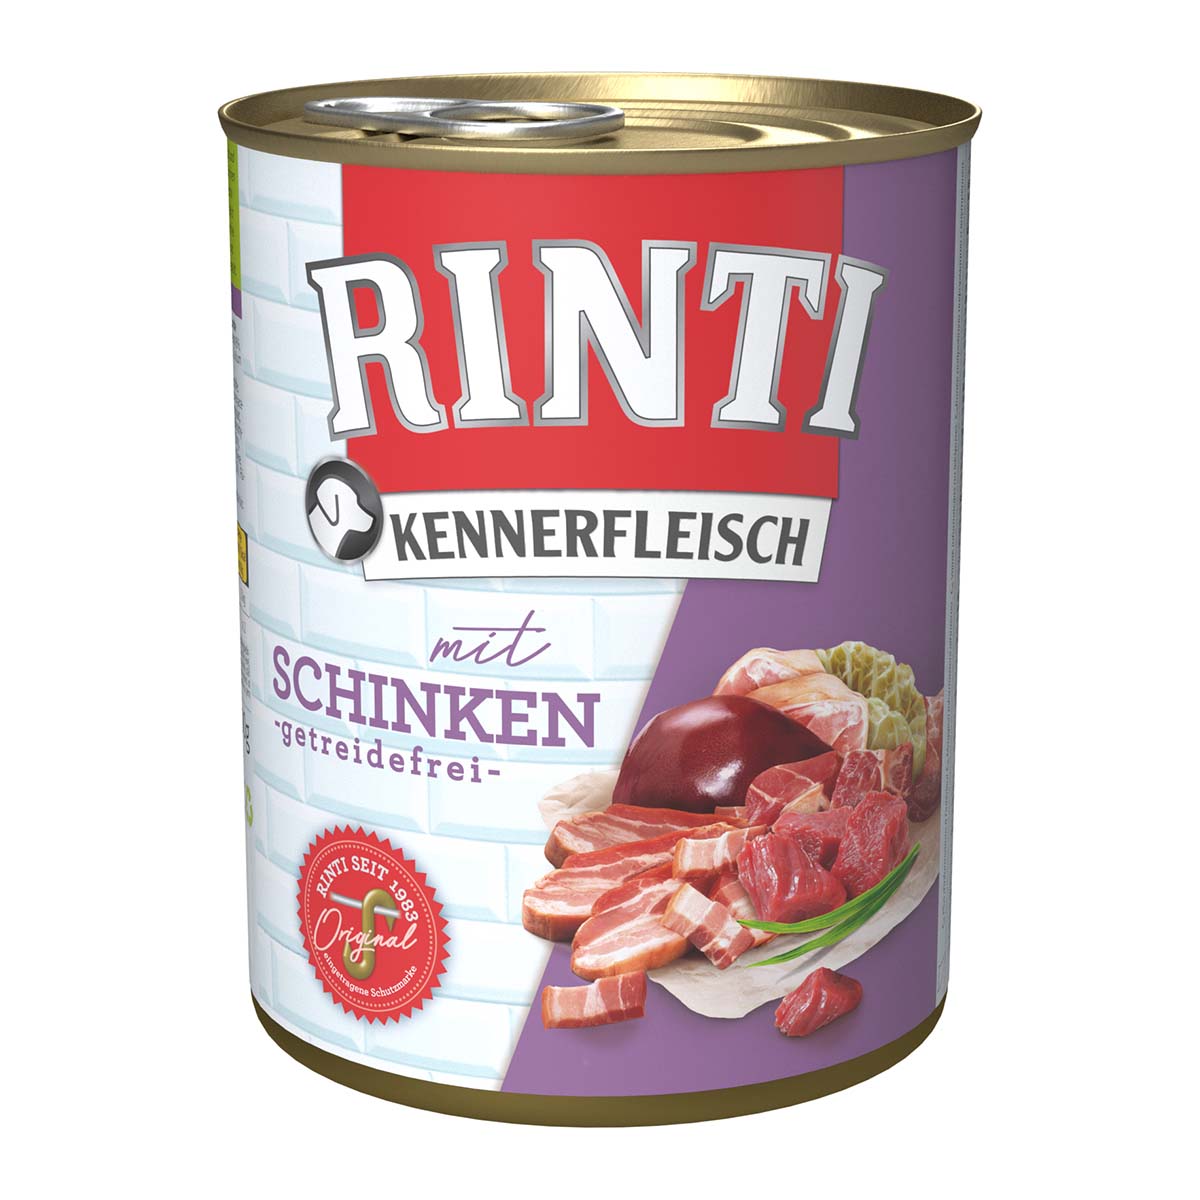 Rinti Kennerfleisch mit Schinken 24x800g